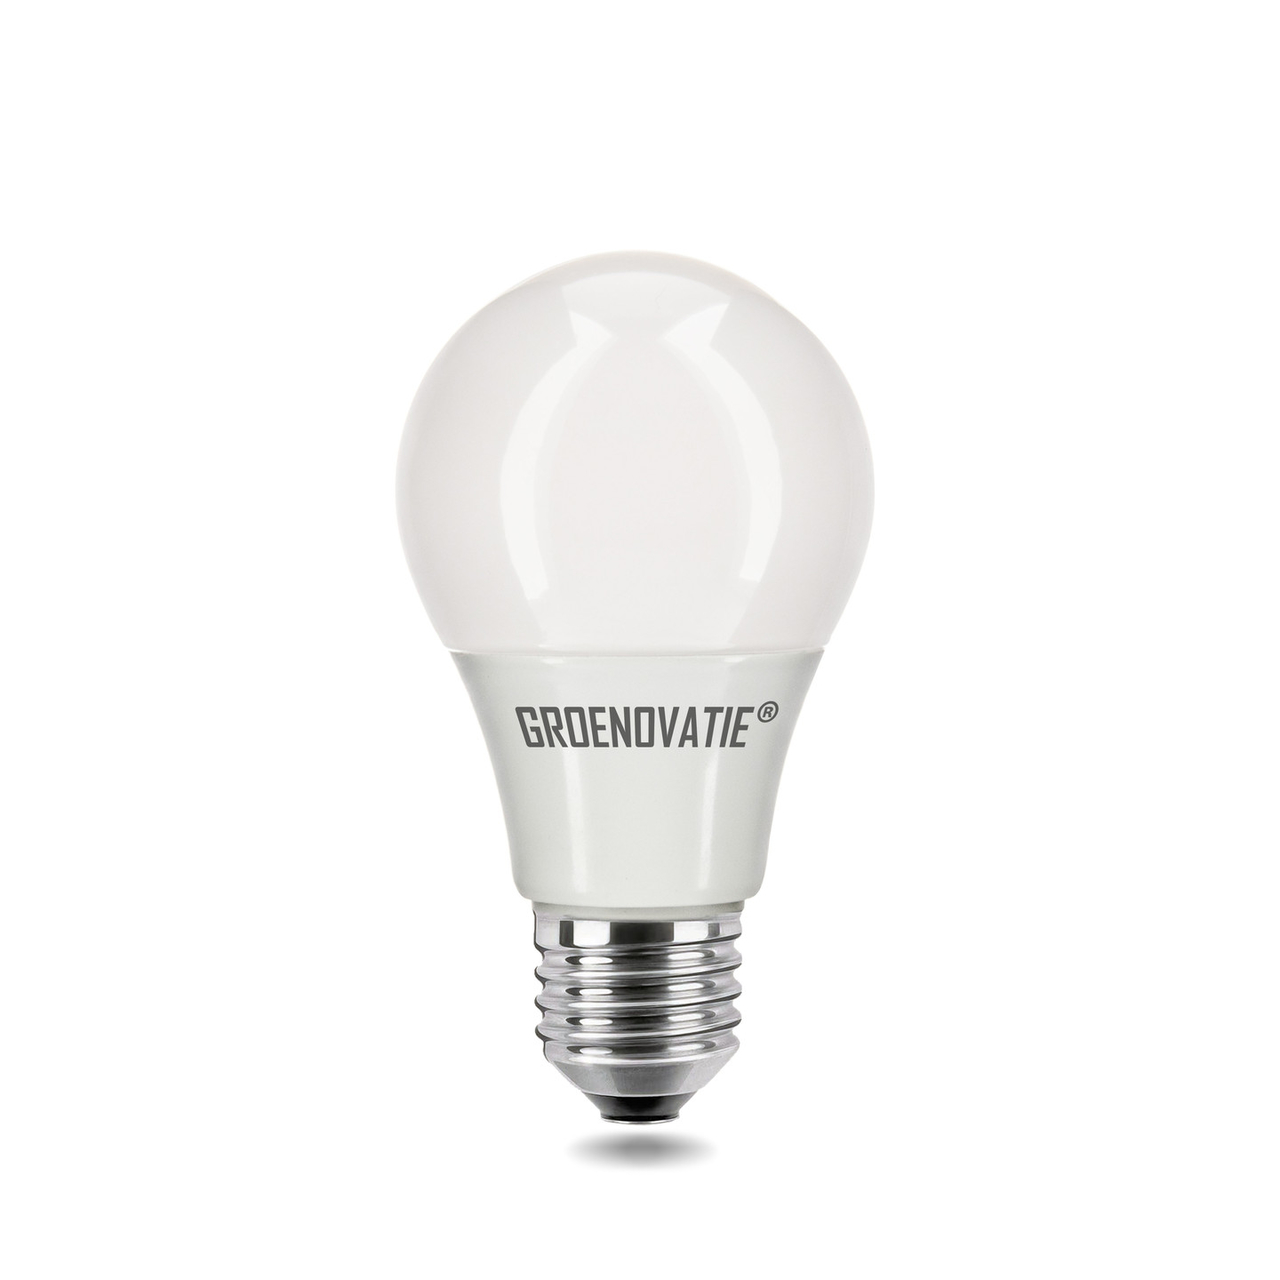 Afhankelijk Kleuterschool Een hekel hebben aan E27 LED Lamp 5W Warm Wit - E27 LEDlampen kopen